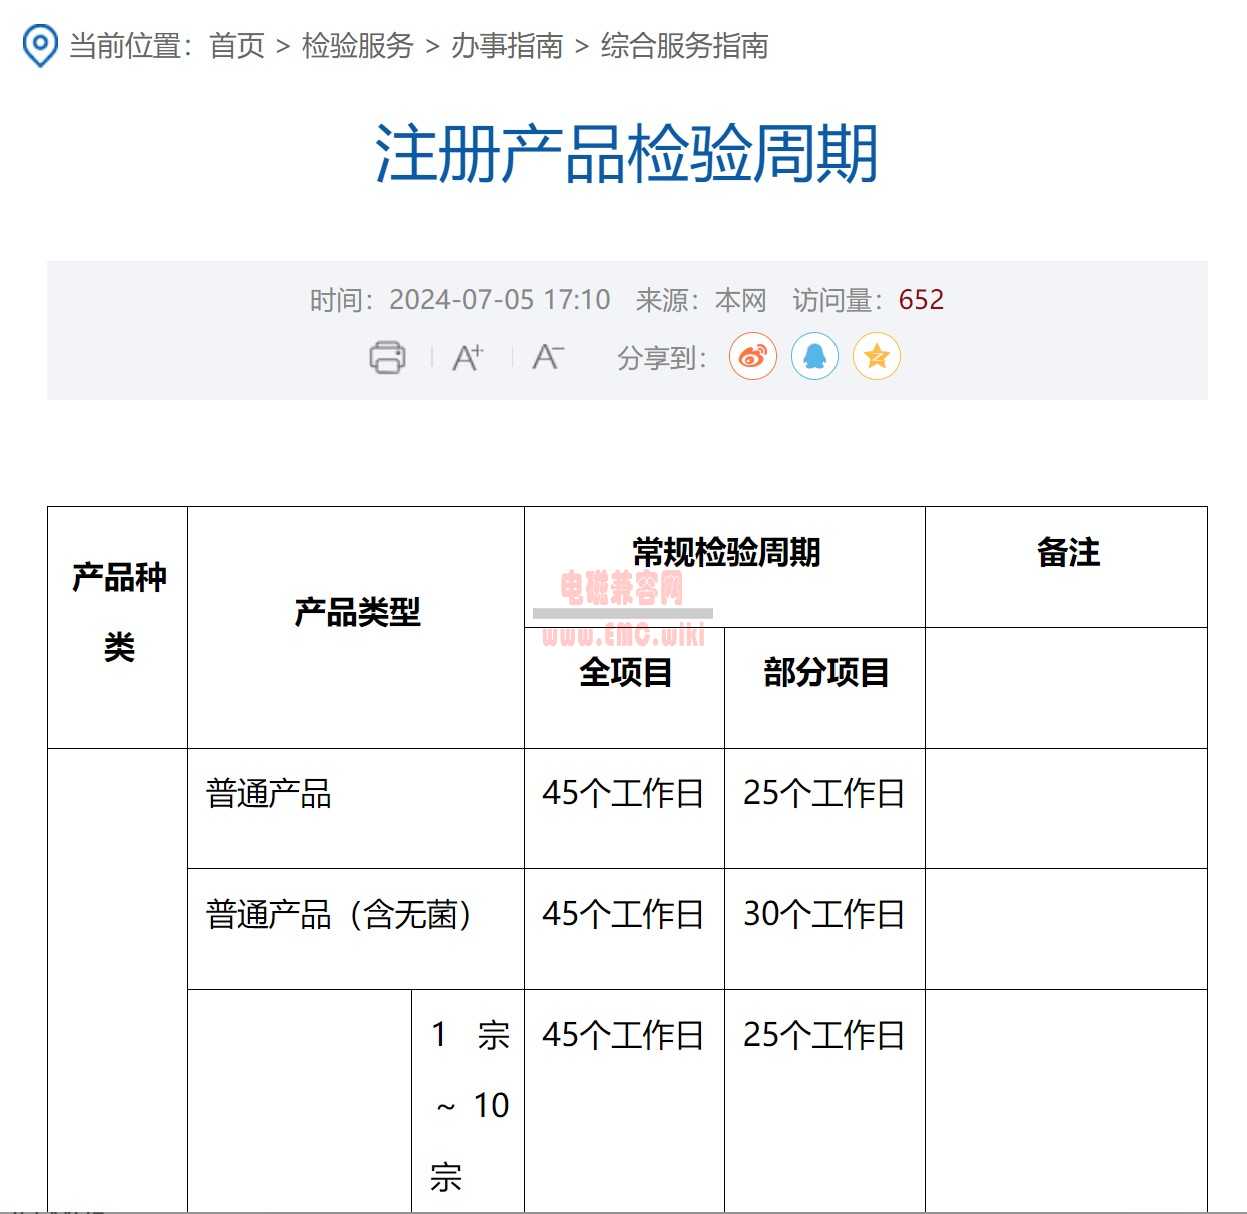 广东省所 - 注册产品检验周期 - 2024-07-05